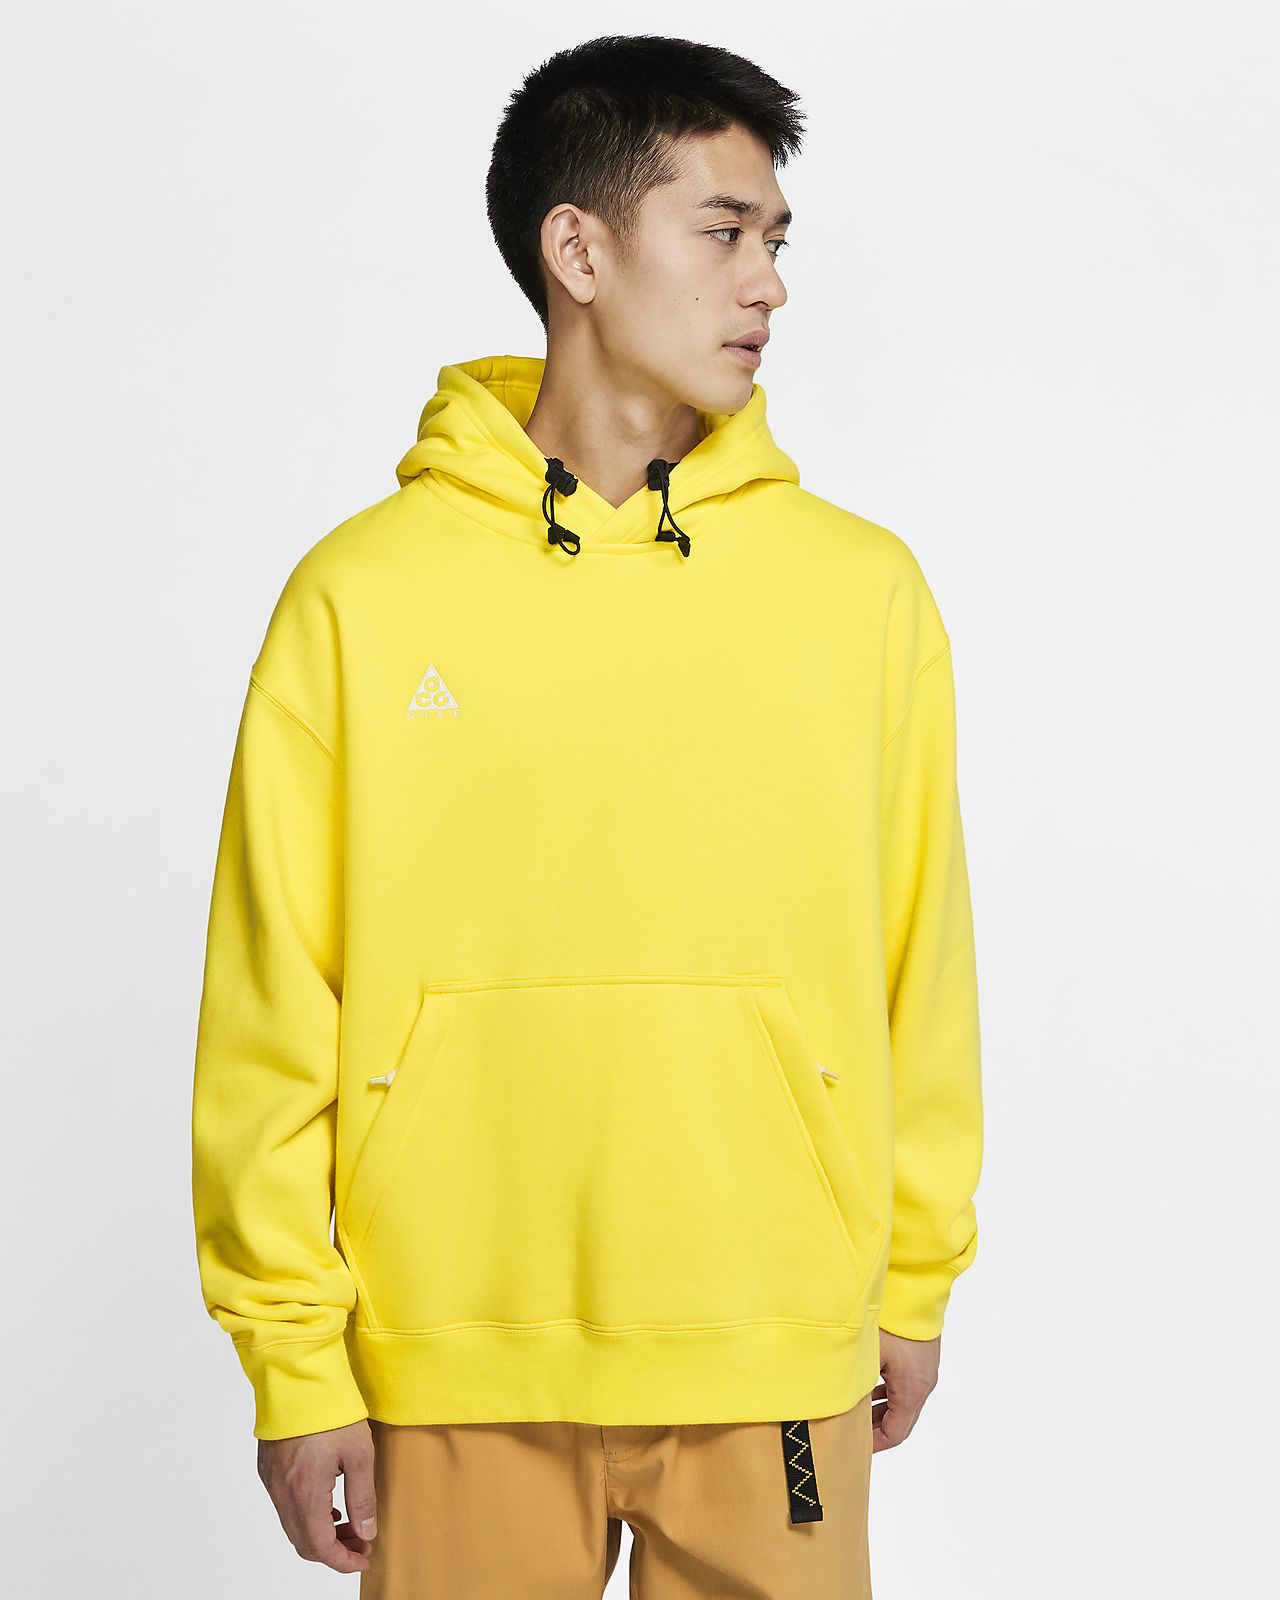 nike yellow hoodie mens